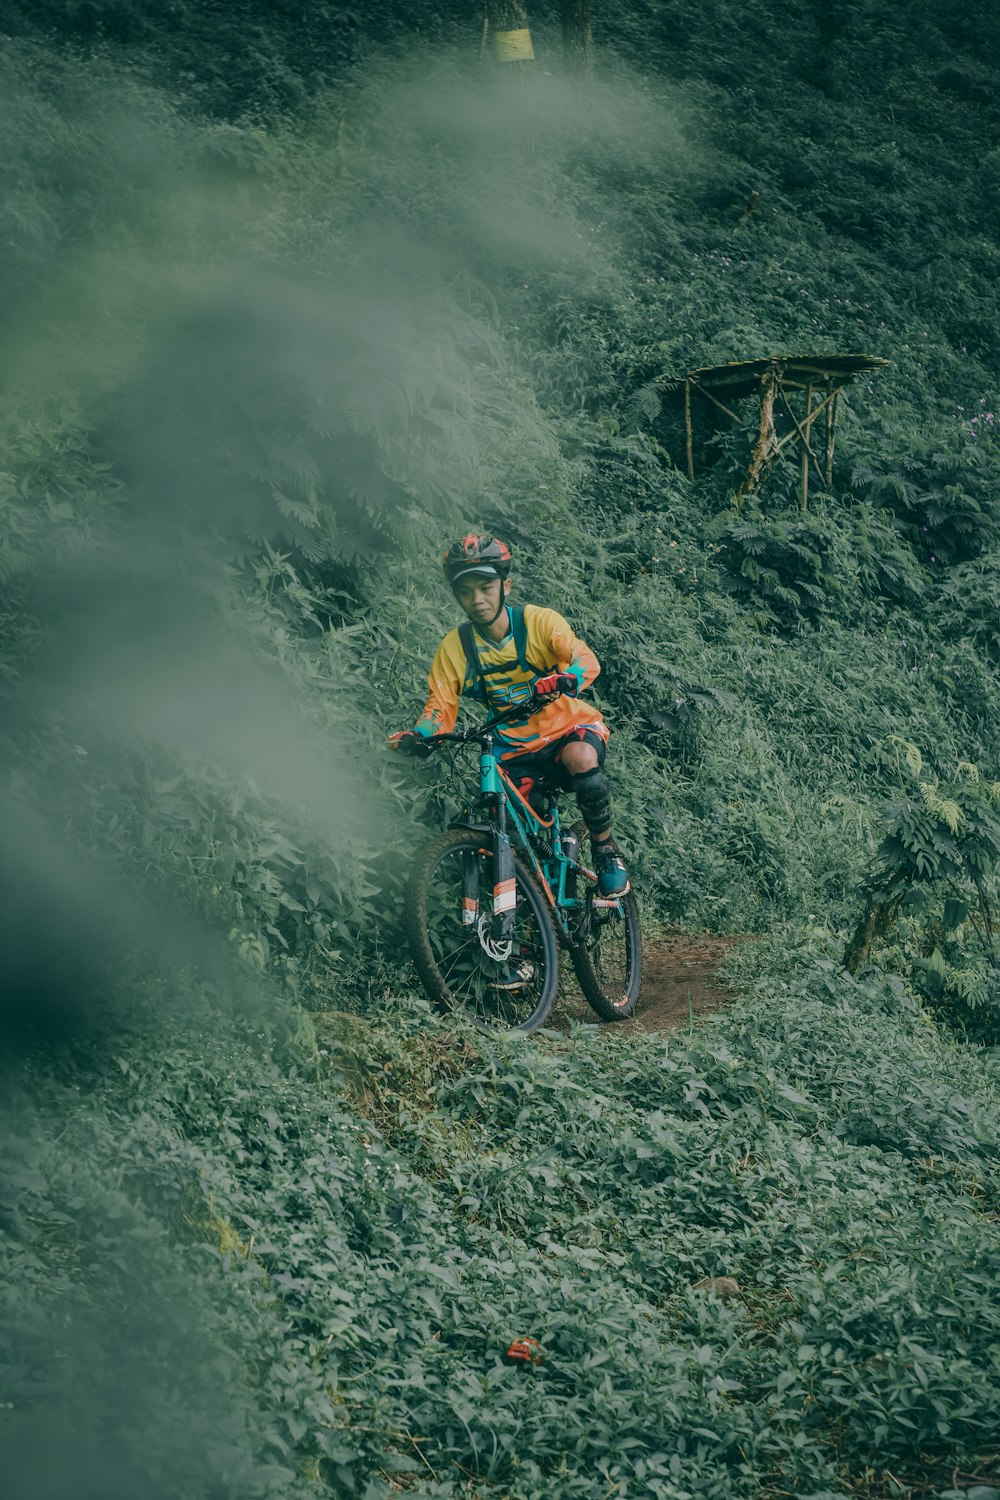 Mann fährt blaugrünes vollgefedertes Mountainbike auf Kante, umgeben von grünen Blattpflanzen